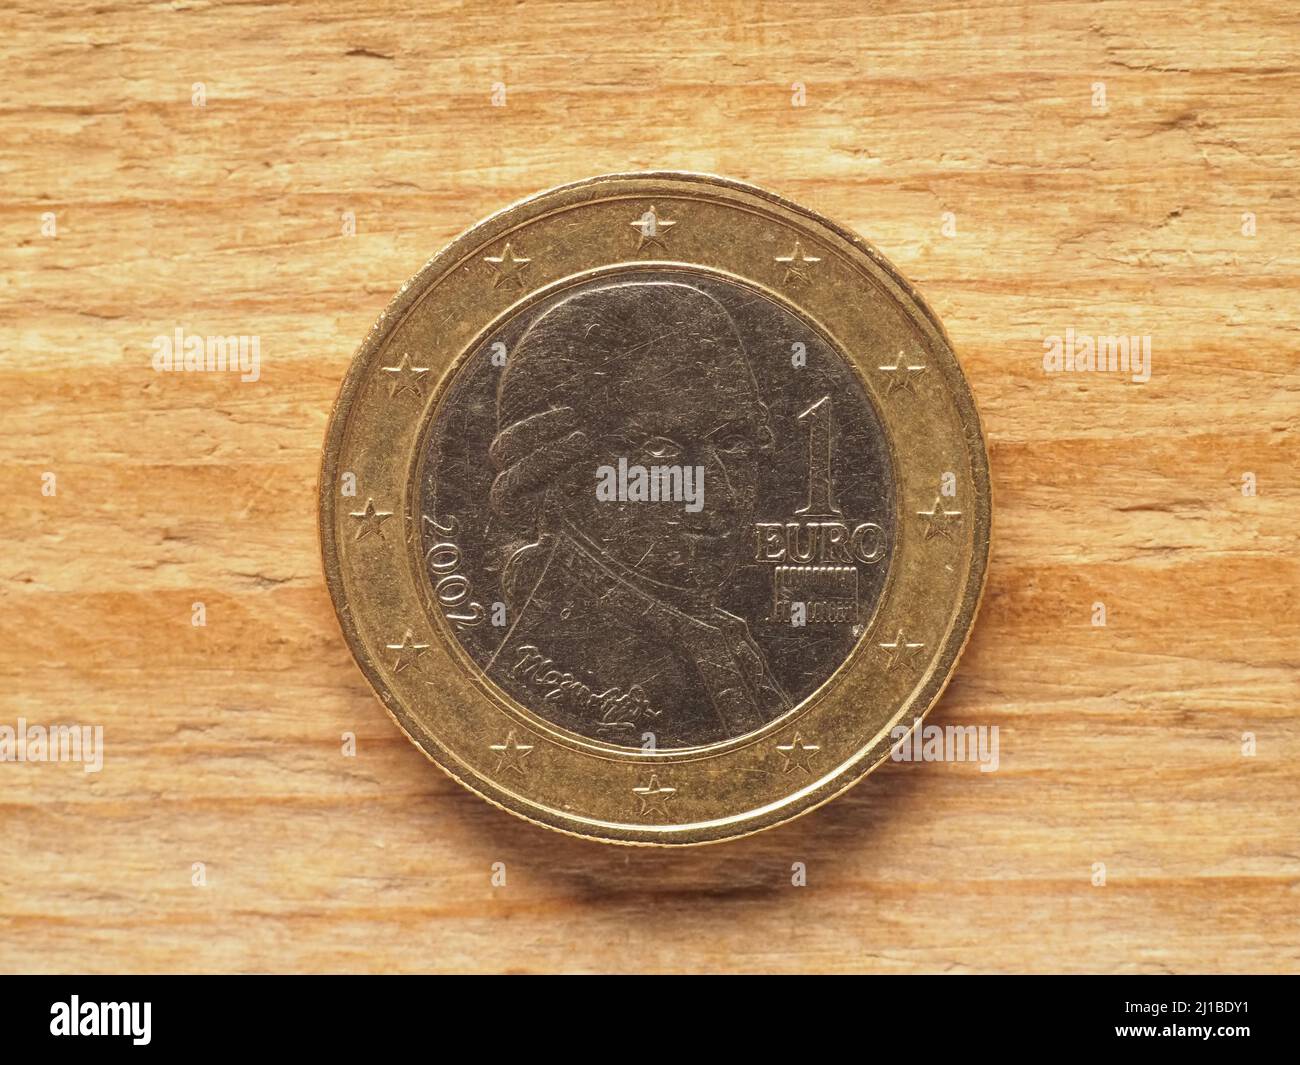 Eine Euro-Münze, Österreich-Seite mit dem Musiker Wolfgang Amadeus Mozart,  Währung von Österreich, Europäische Union Stockfotografie - Alamy